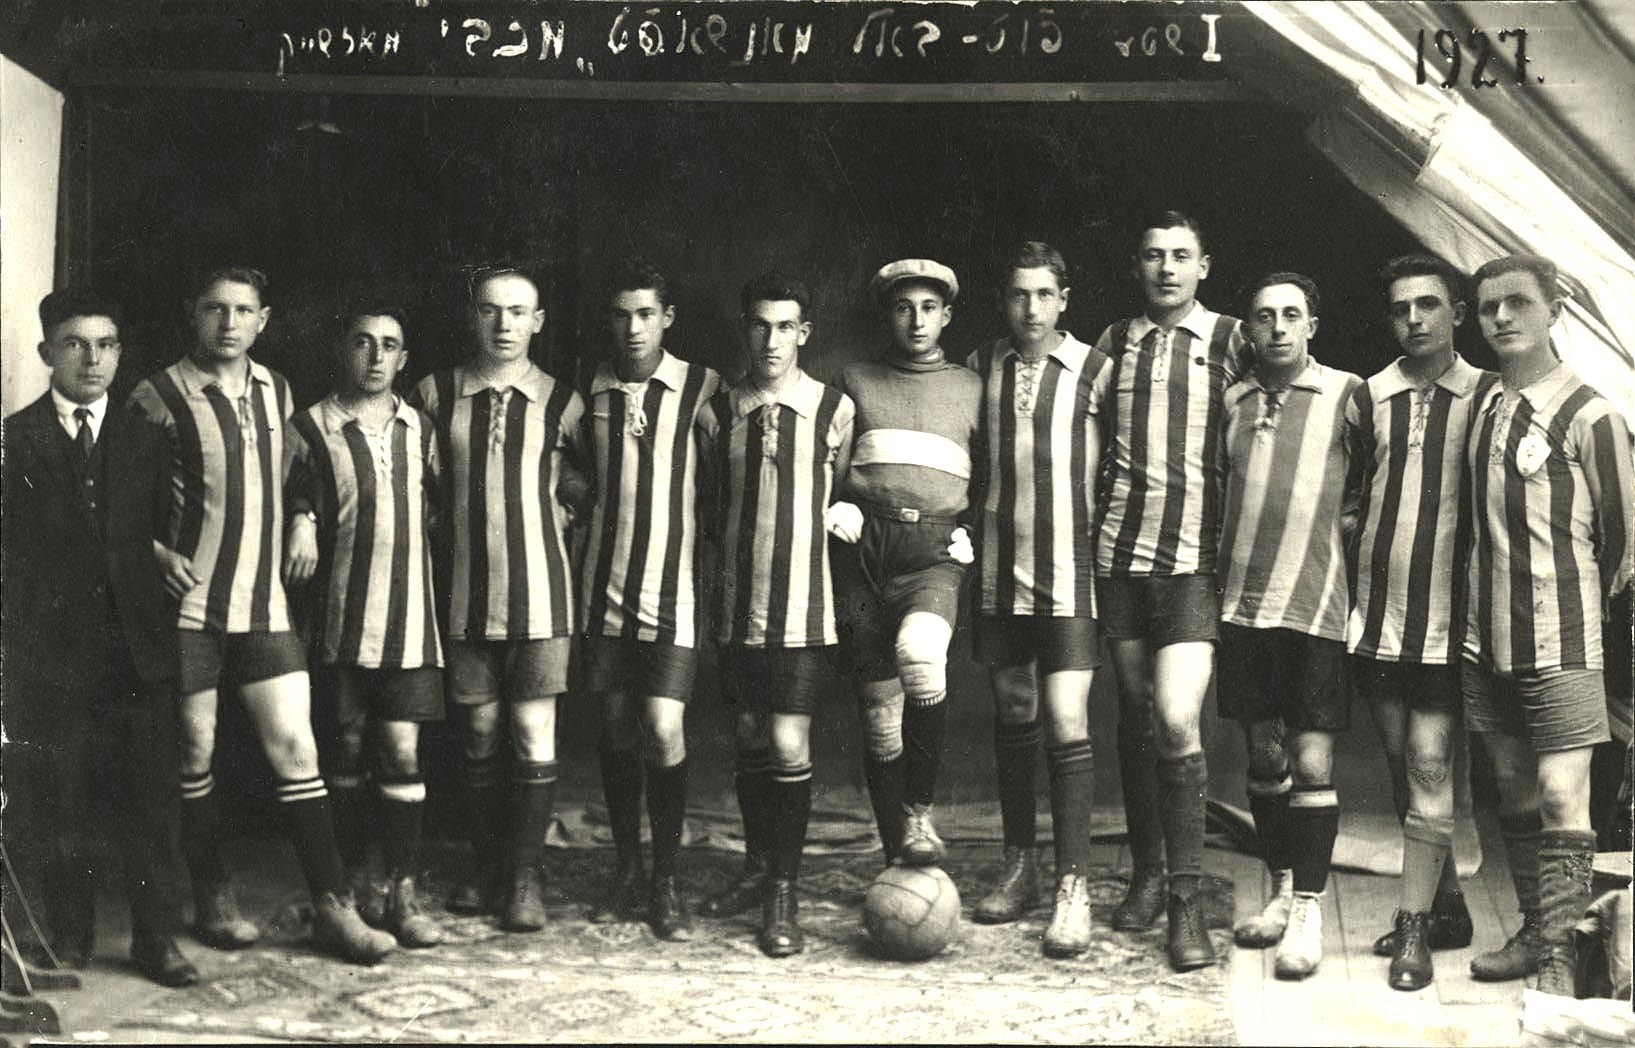 Mažeikiai, Litauen, 4.9.1927, der Fußballverein „Makkabi"